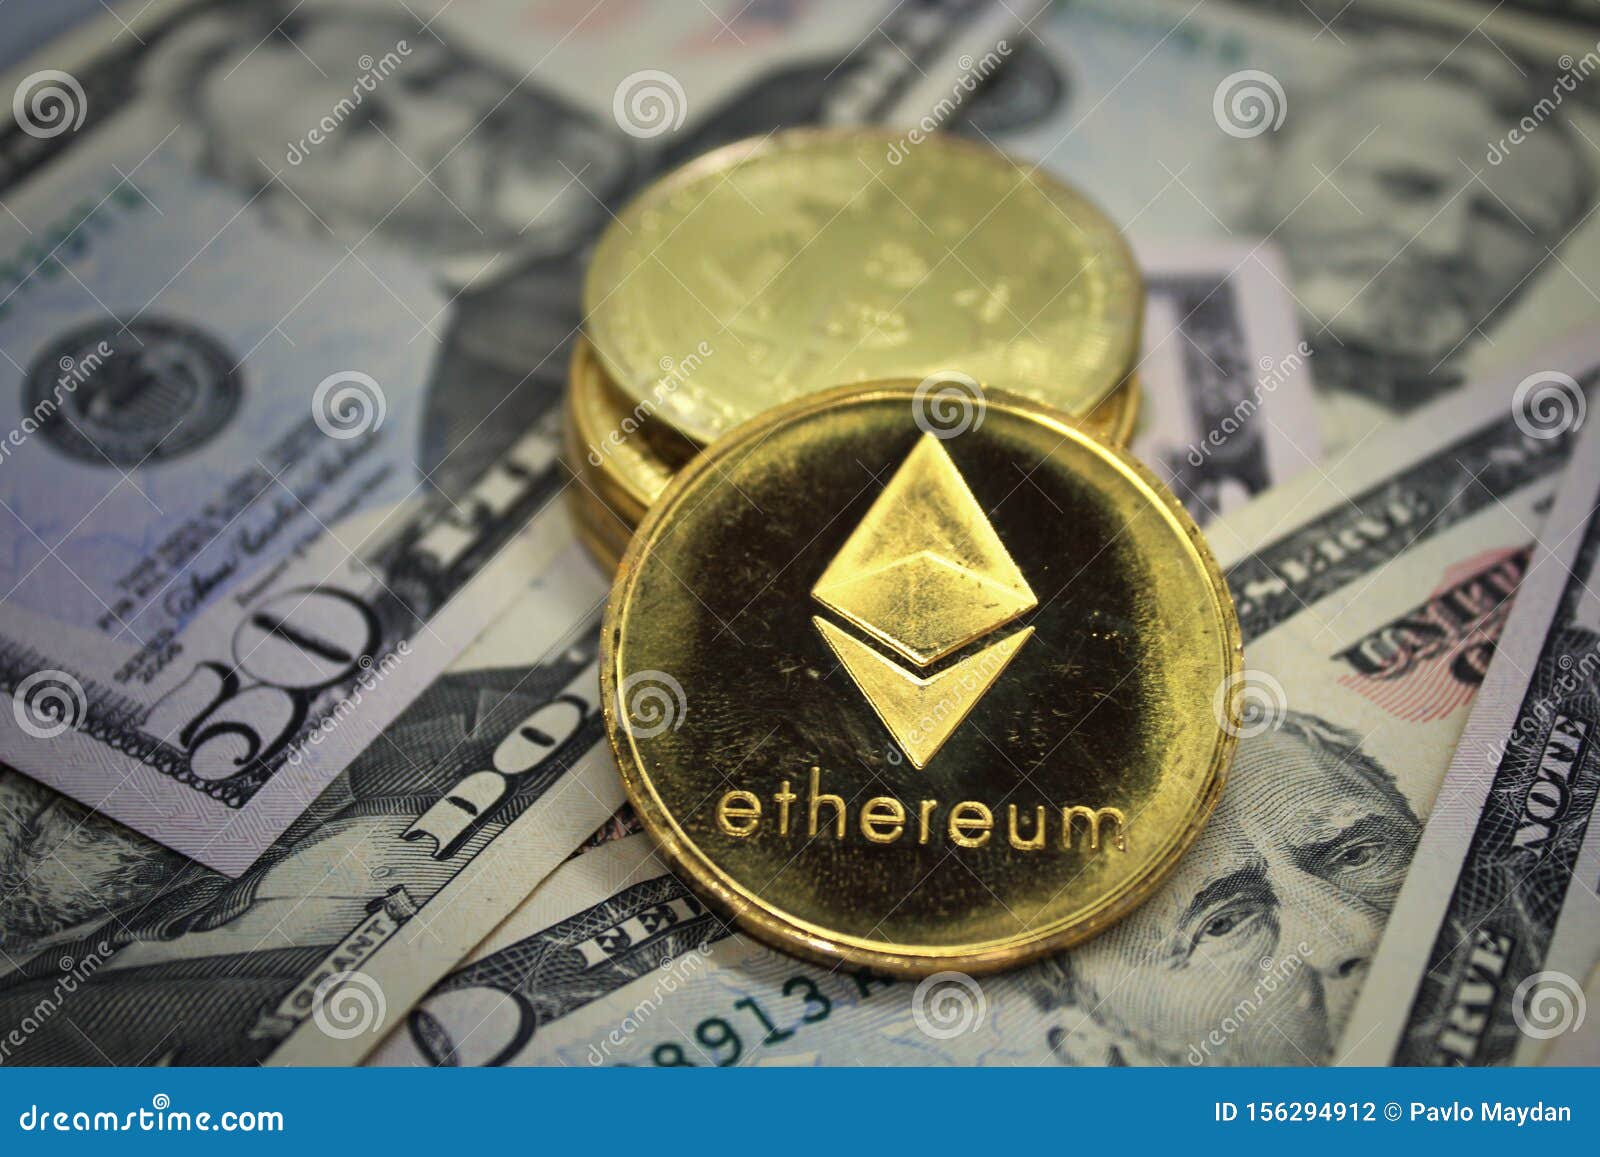 Ethereum dollar exchange litecoin price alerts coinbase